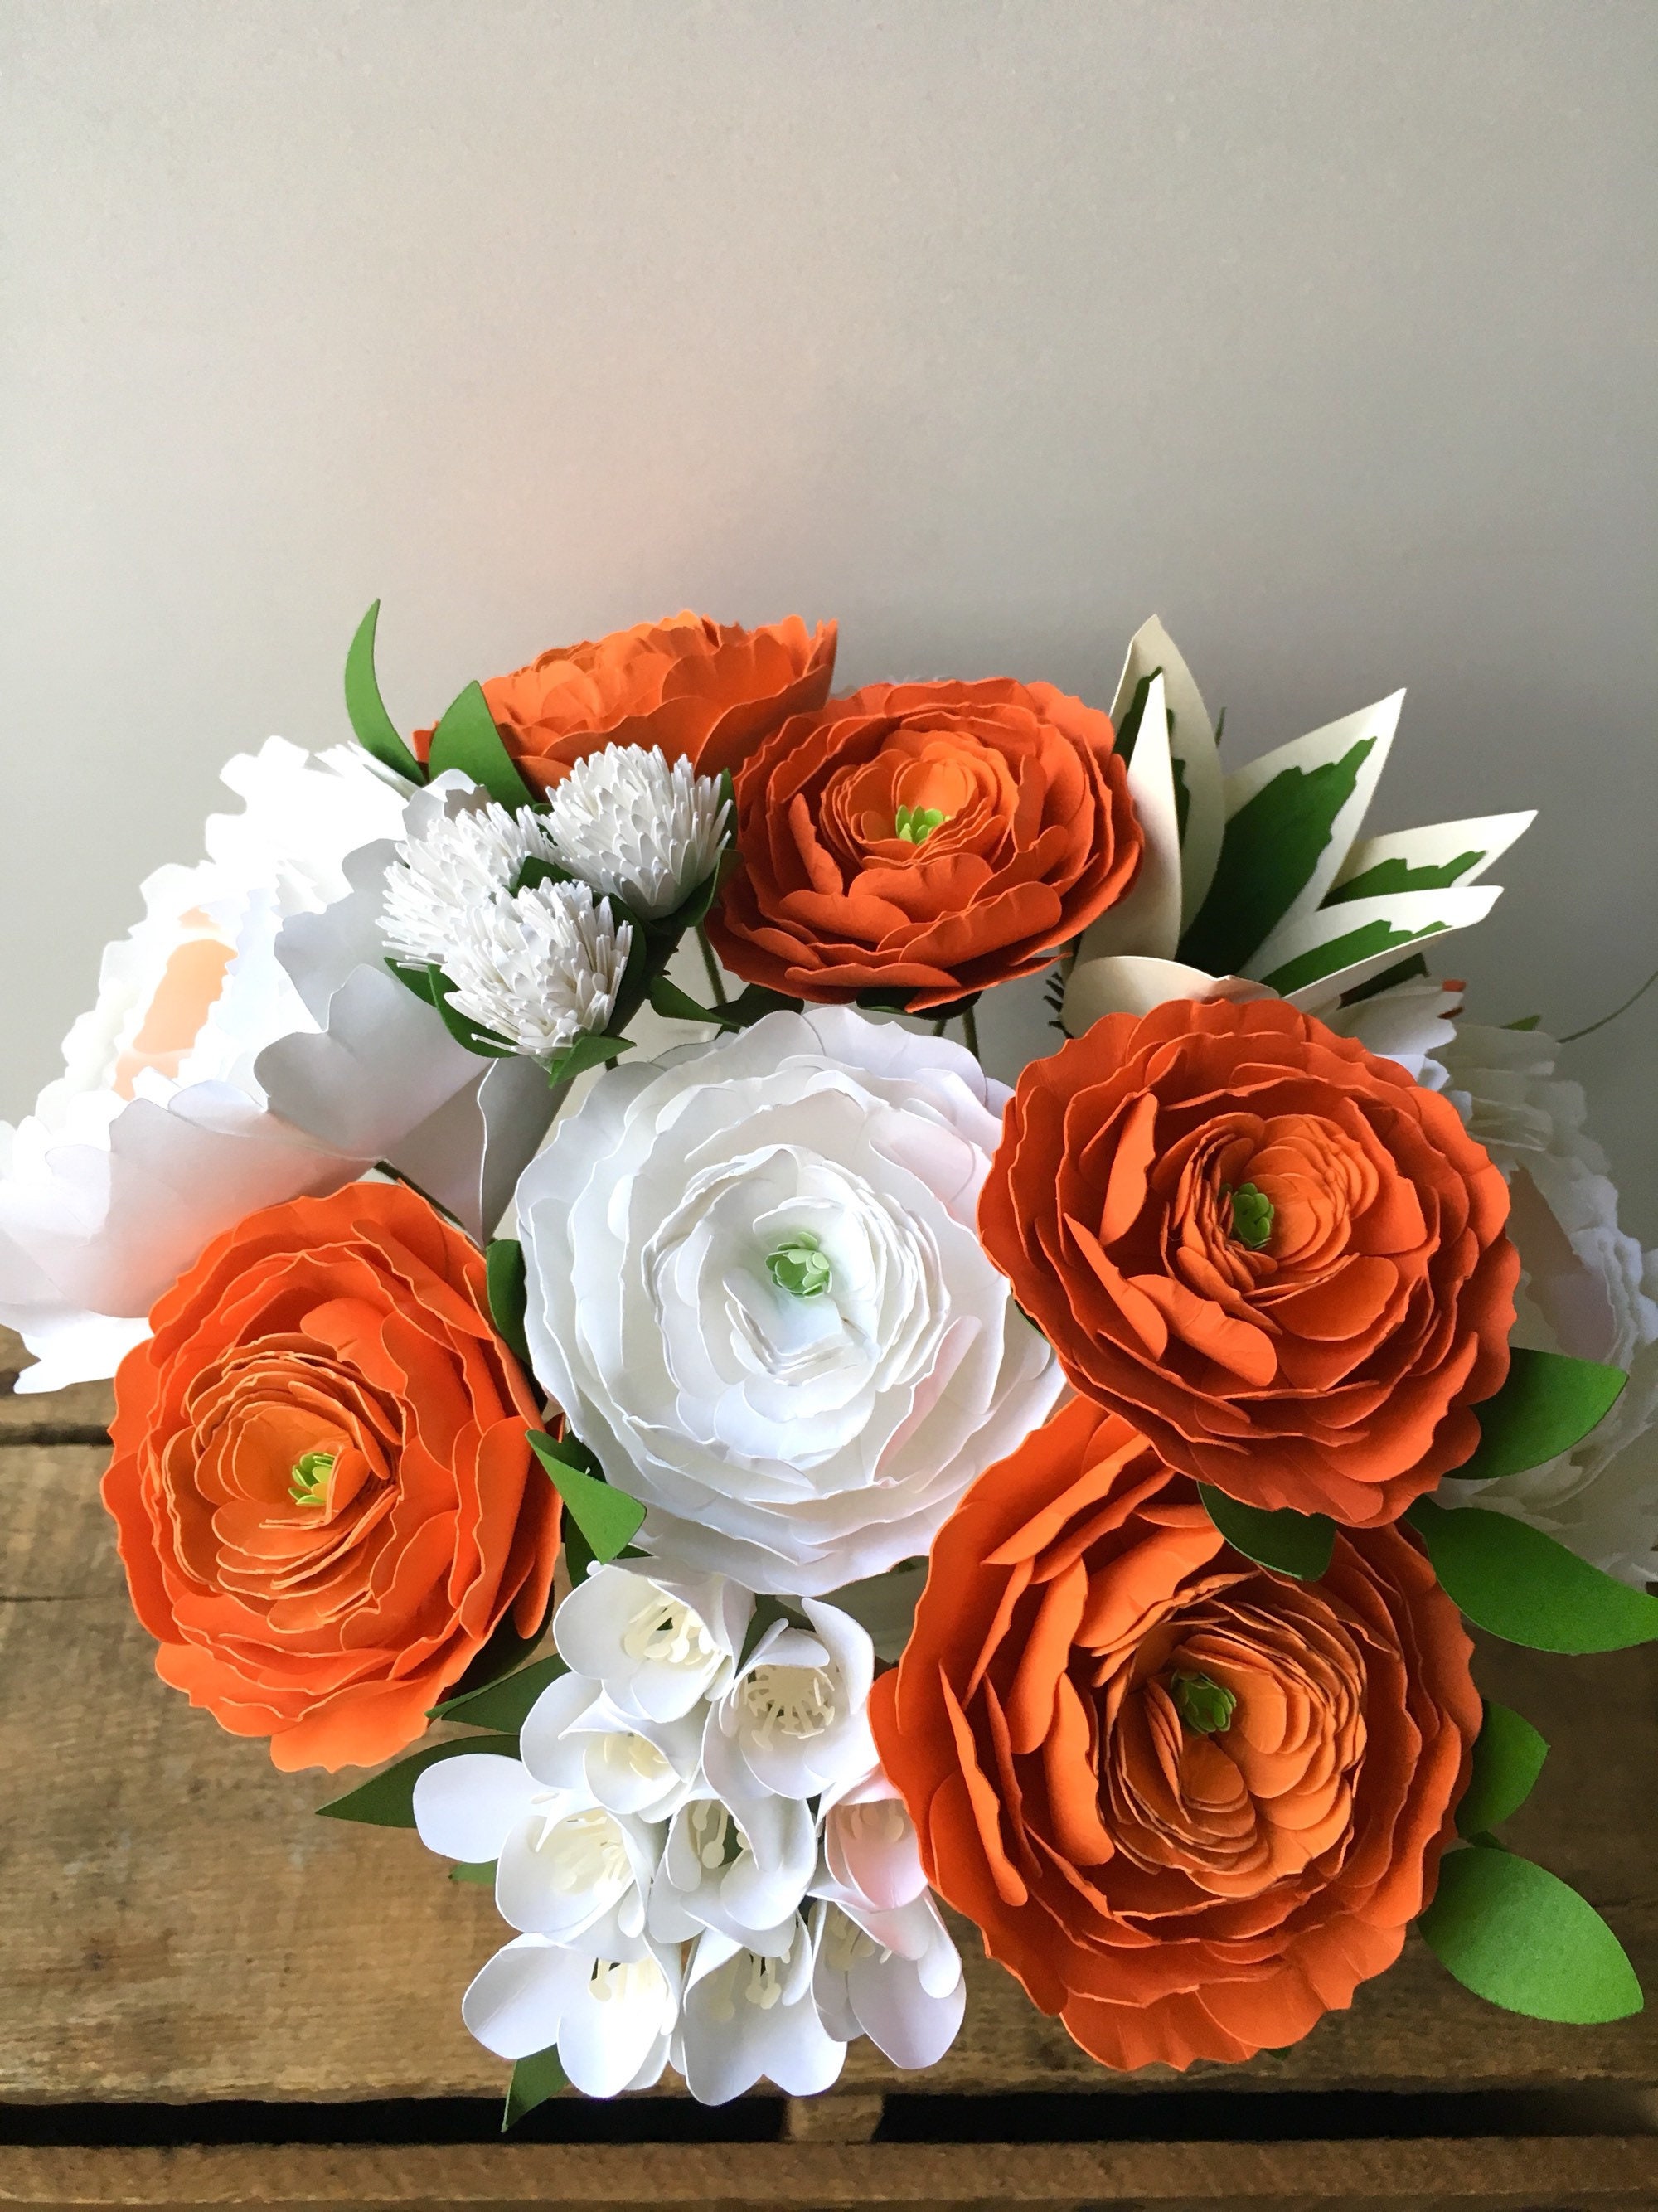 Orange Citrus and White Paper Flower Bouquet - Small Bouquet